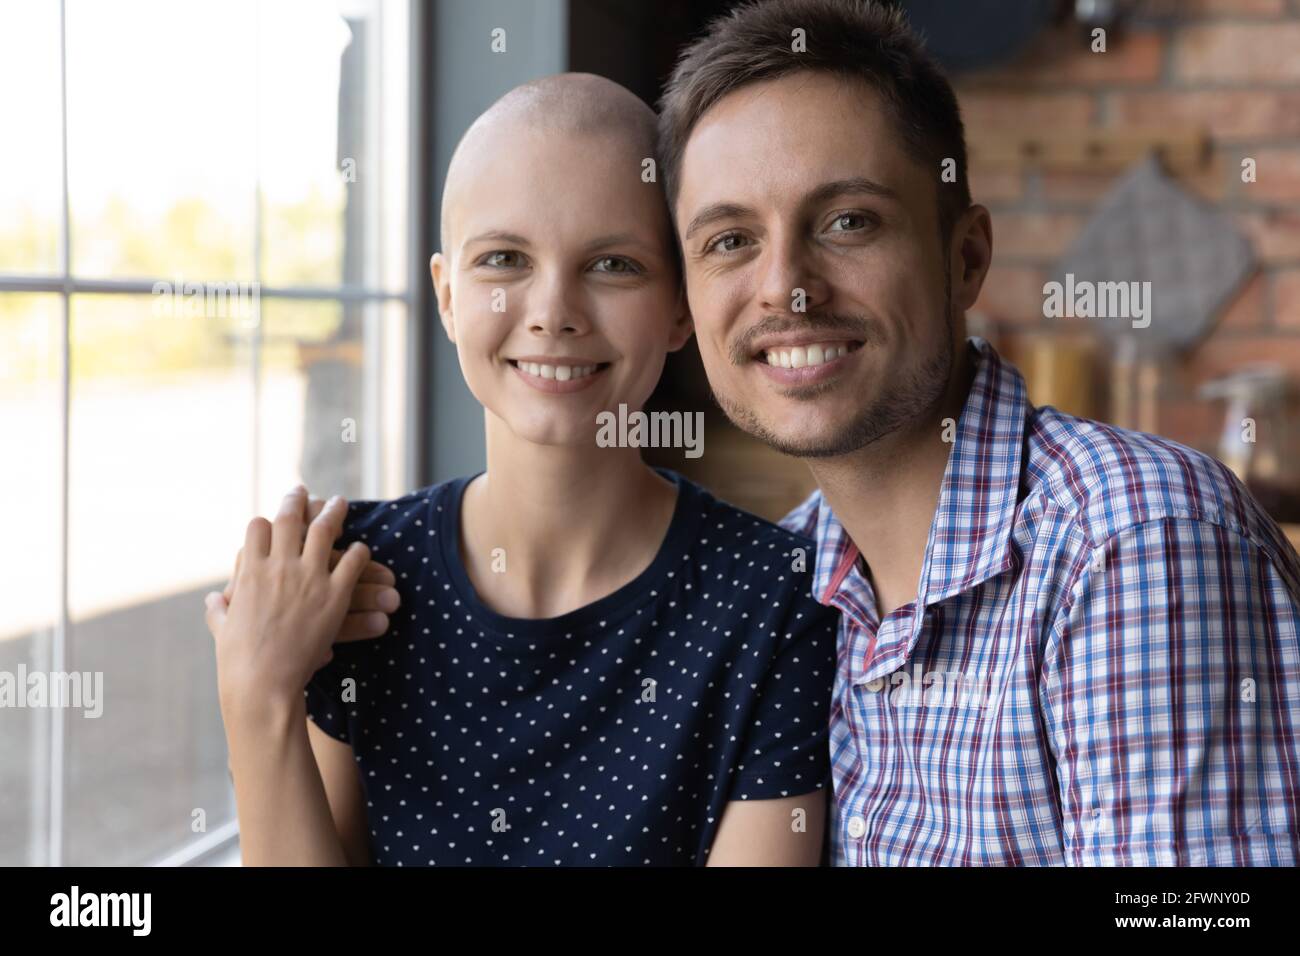 Bildschirmansicht eines glücklichen jungen Ehepaares, das sich lächelnd umarmt Stockfoto